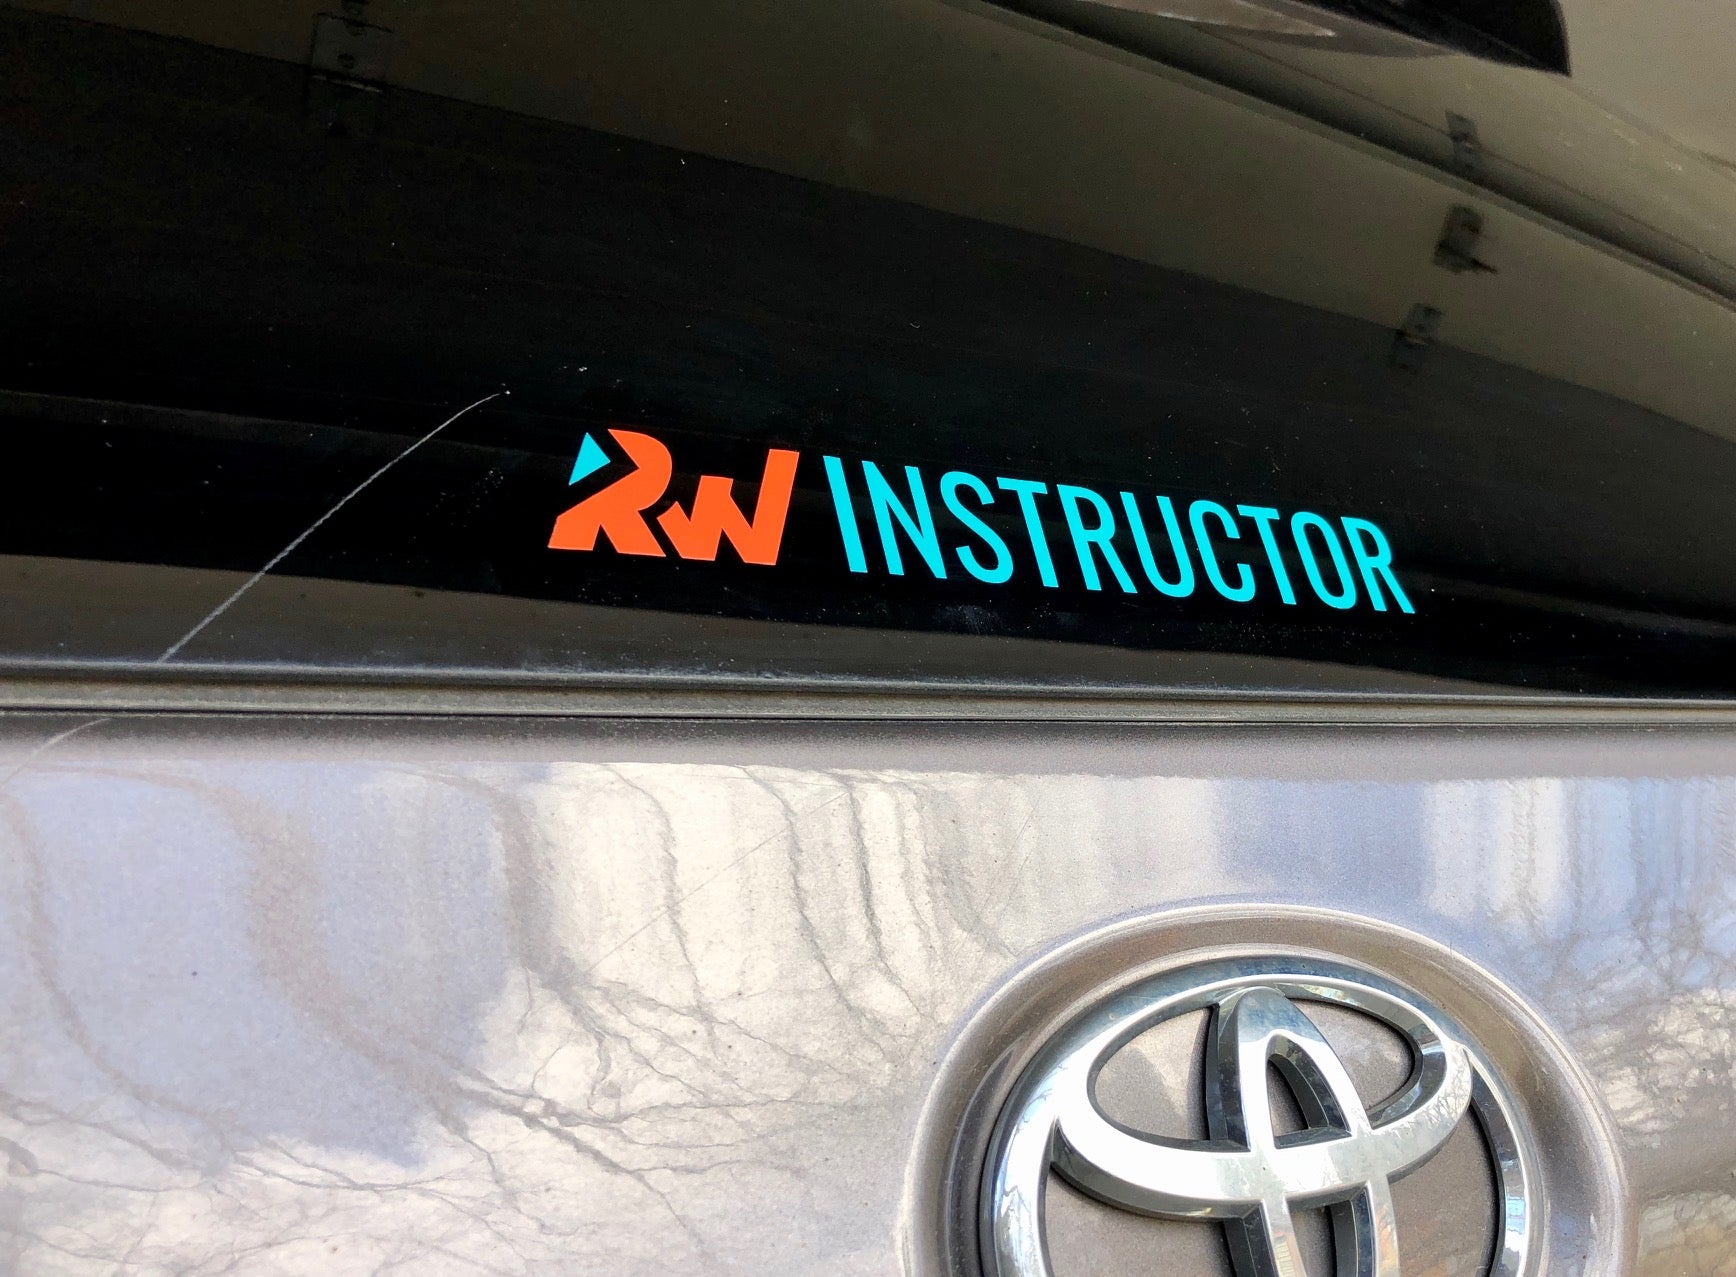 RW Instructor Decal